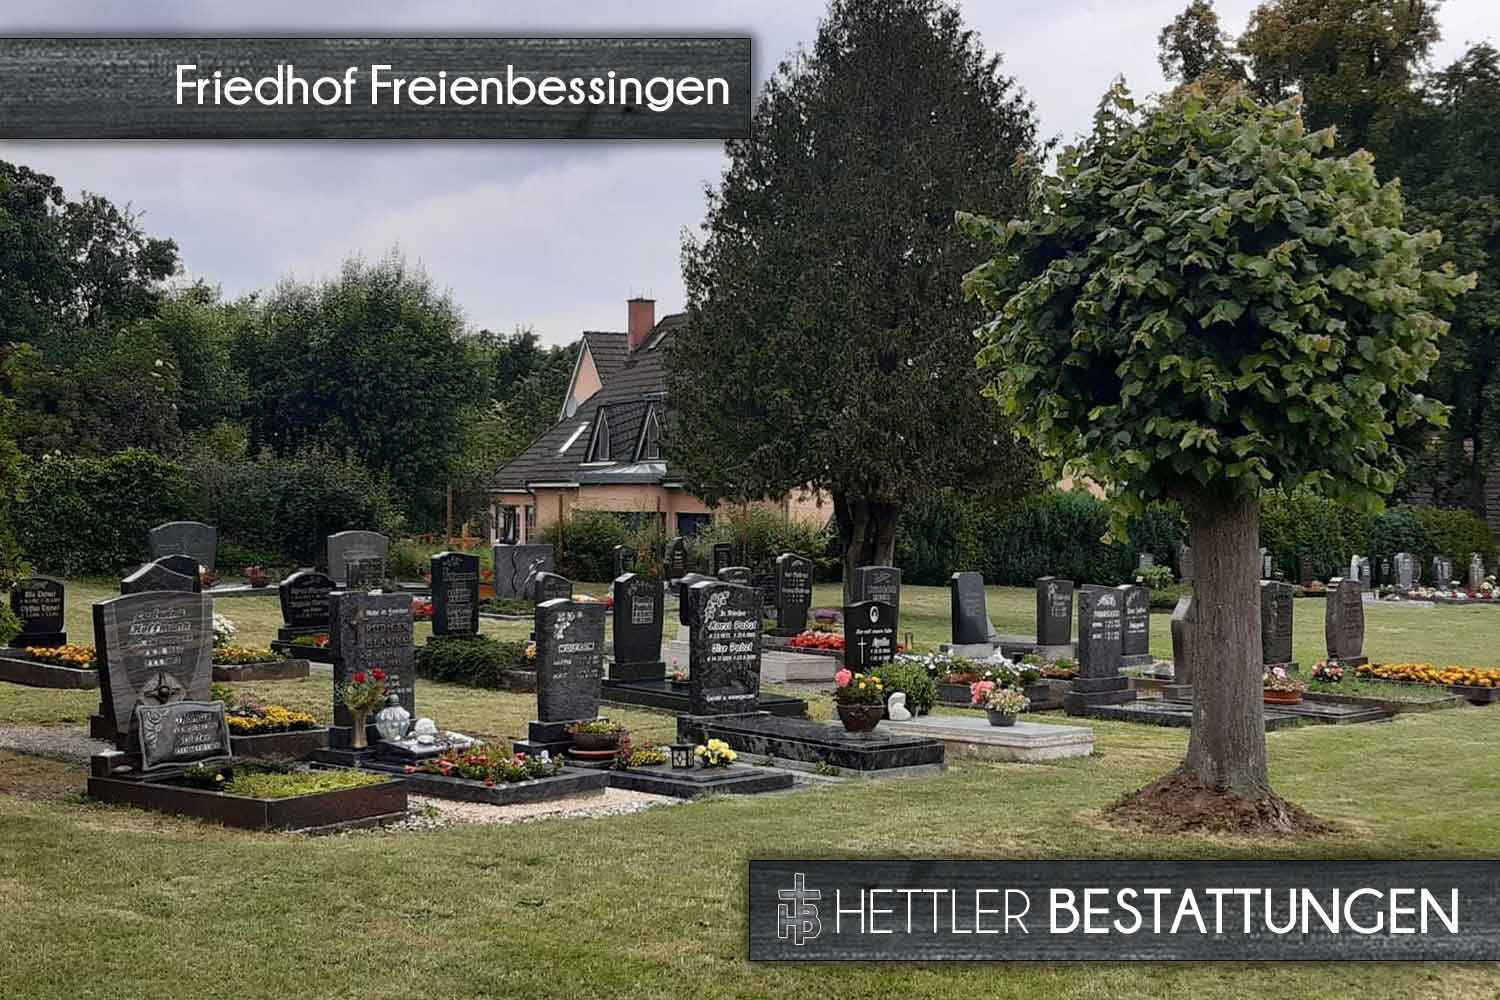 Friedhof in Freienbessingen. Ihr Ort des Abschieds mit Hettler Bestattungen.